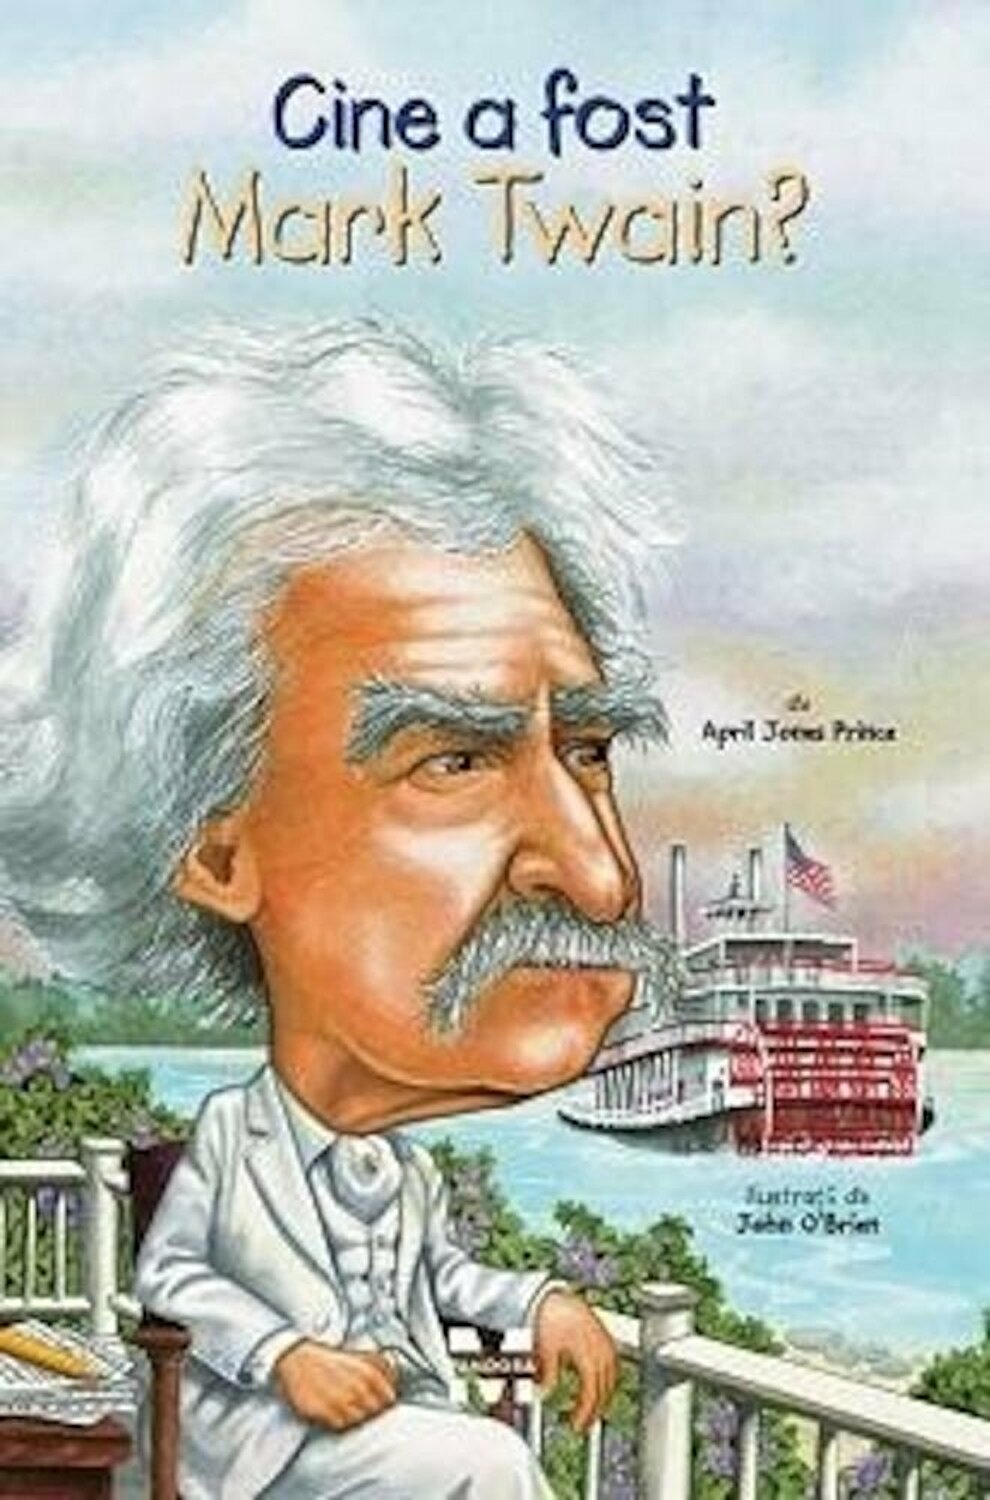 Cine a fost Mark Twain? | April Jones Prince carturesti.ro